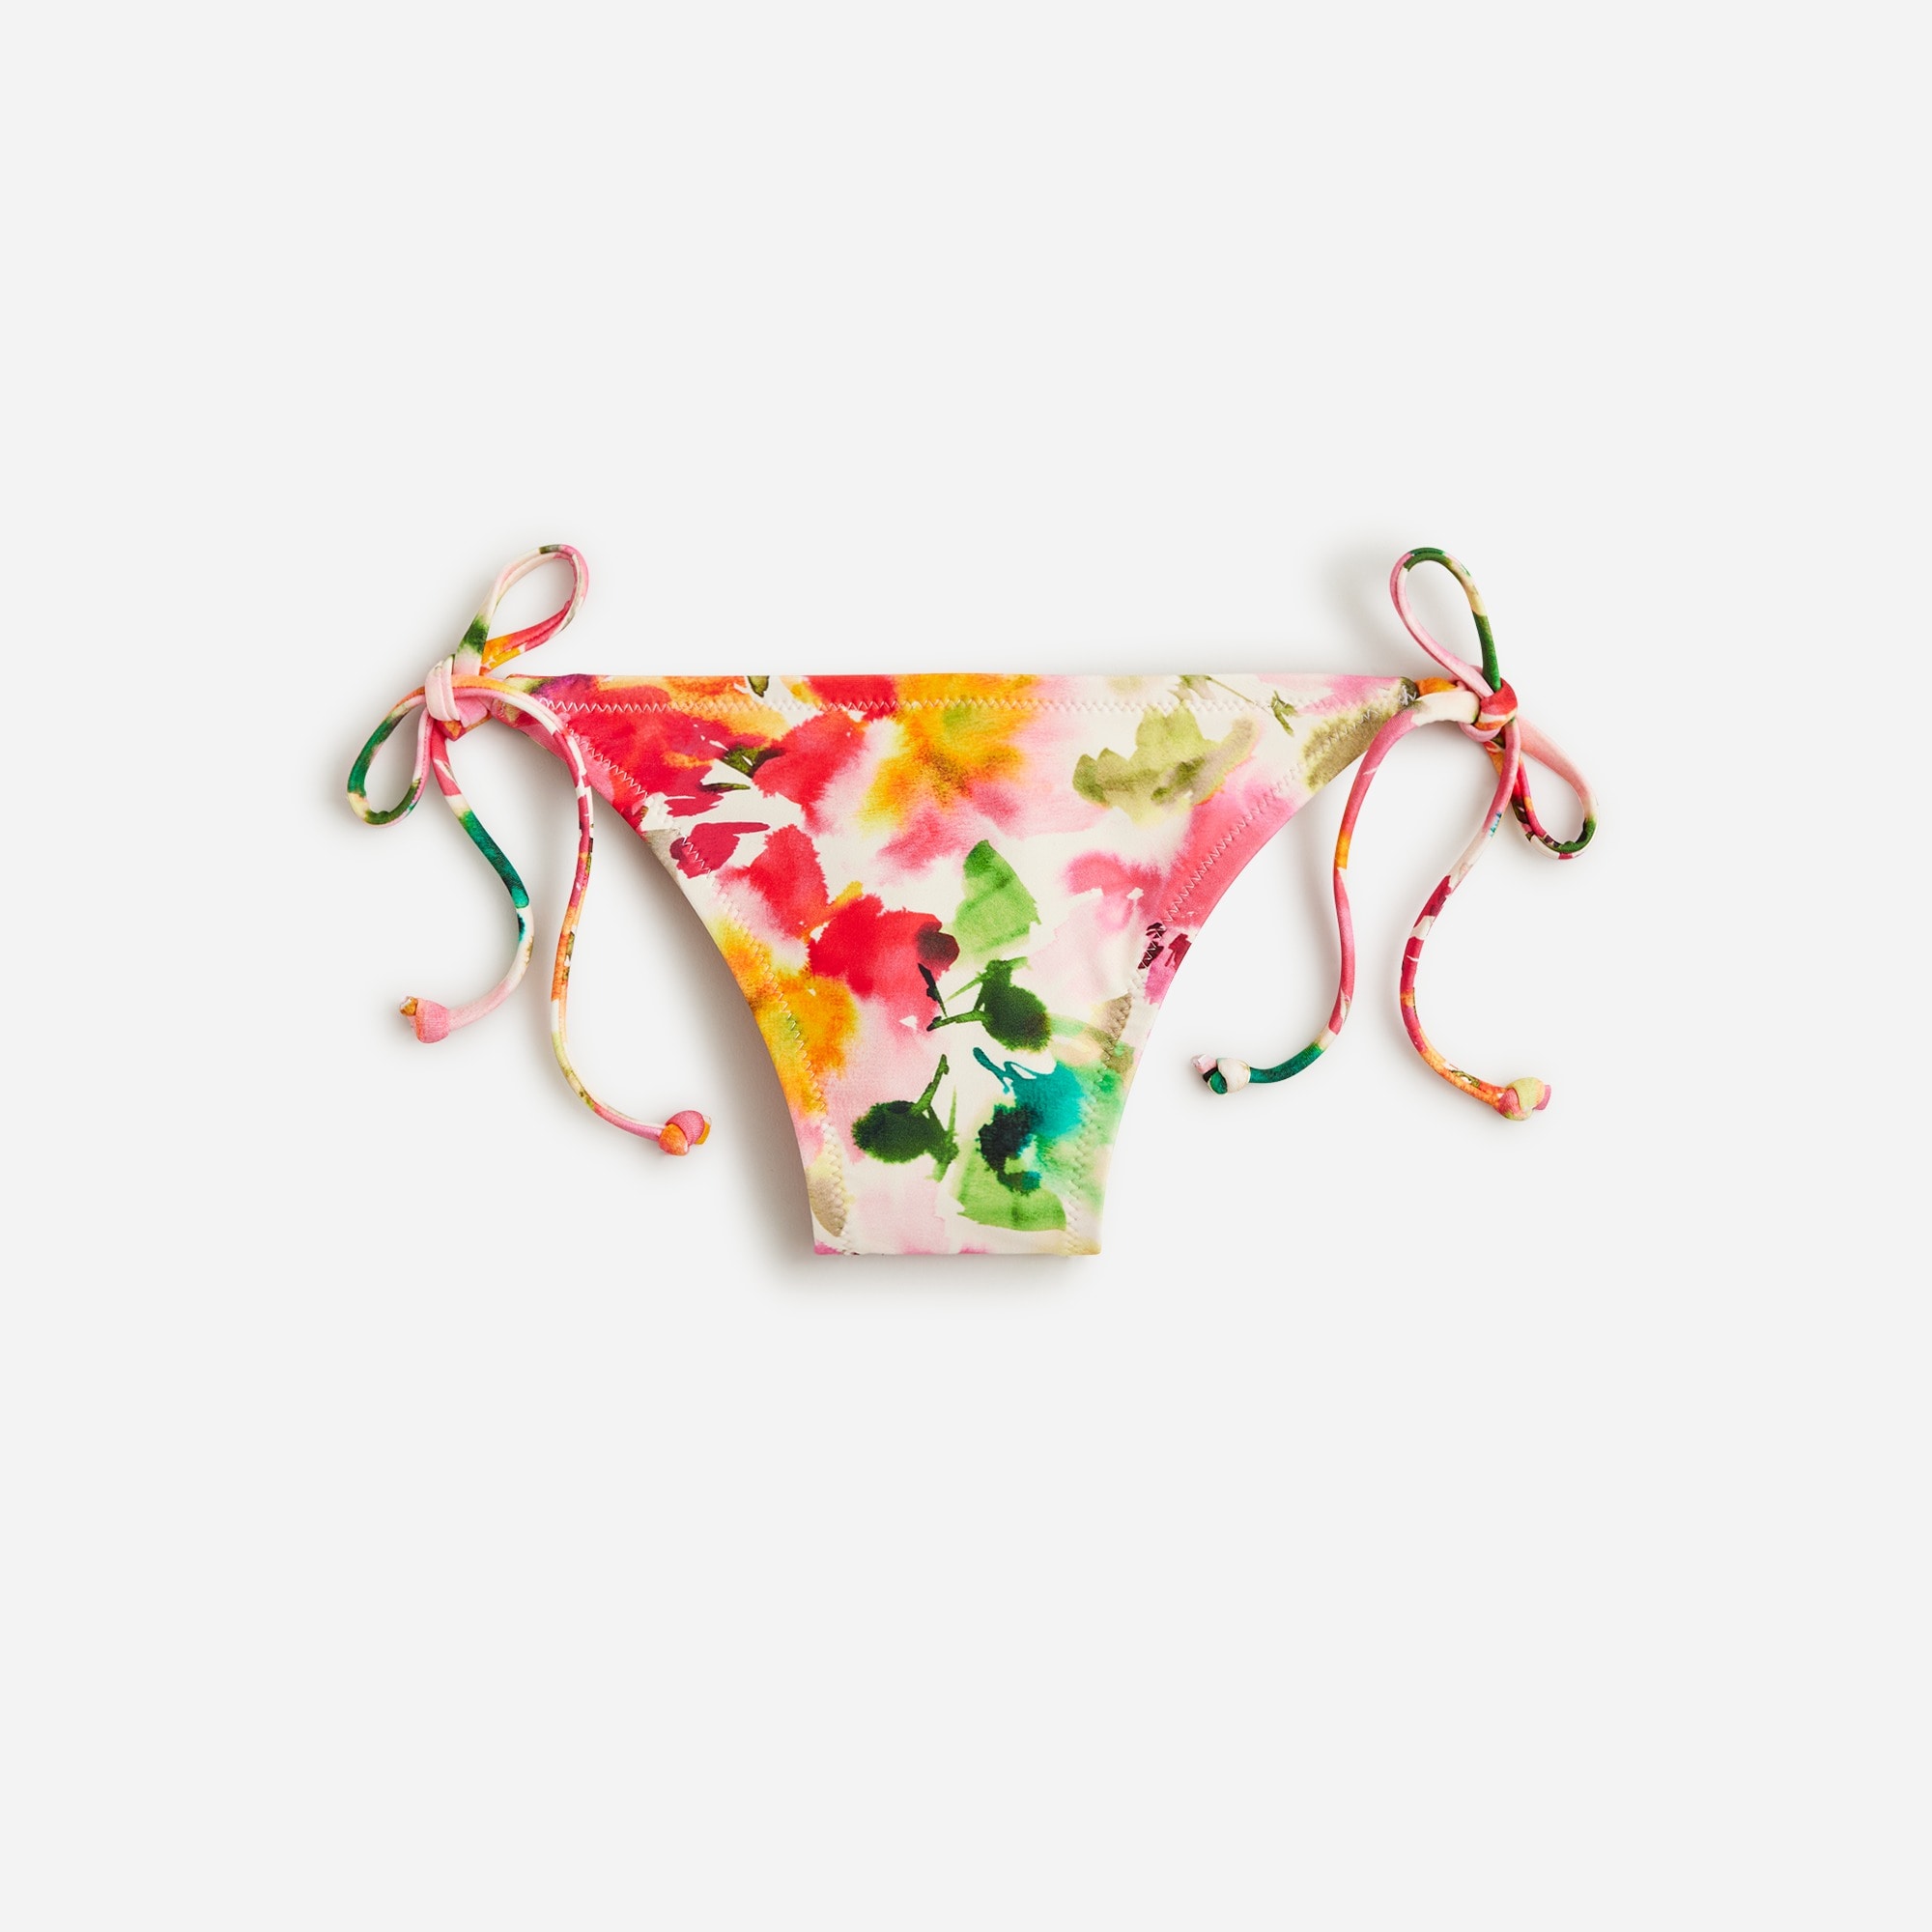  String hipster bikini bottom in floral